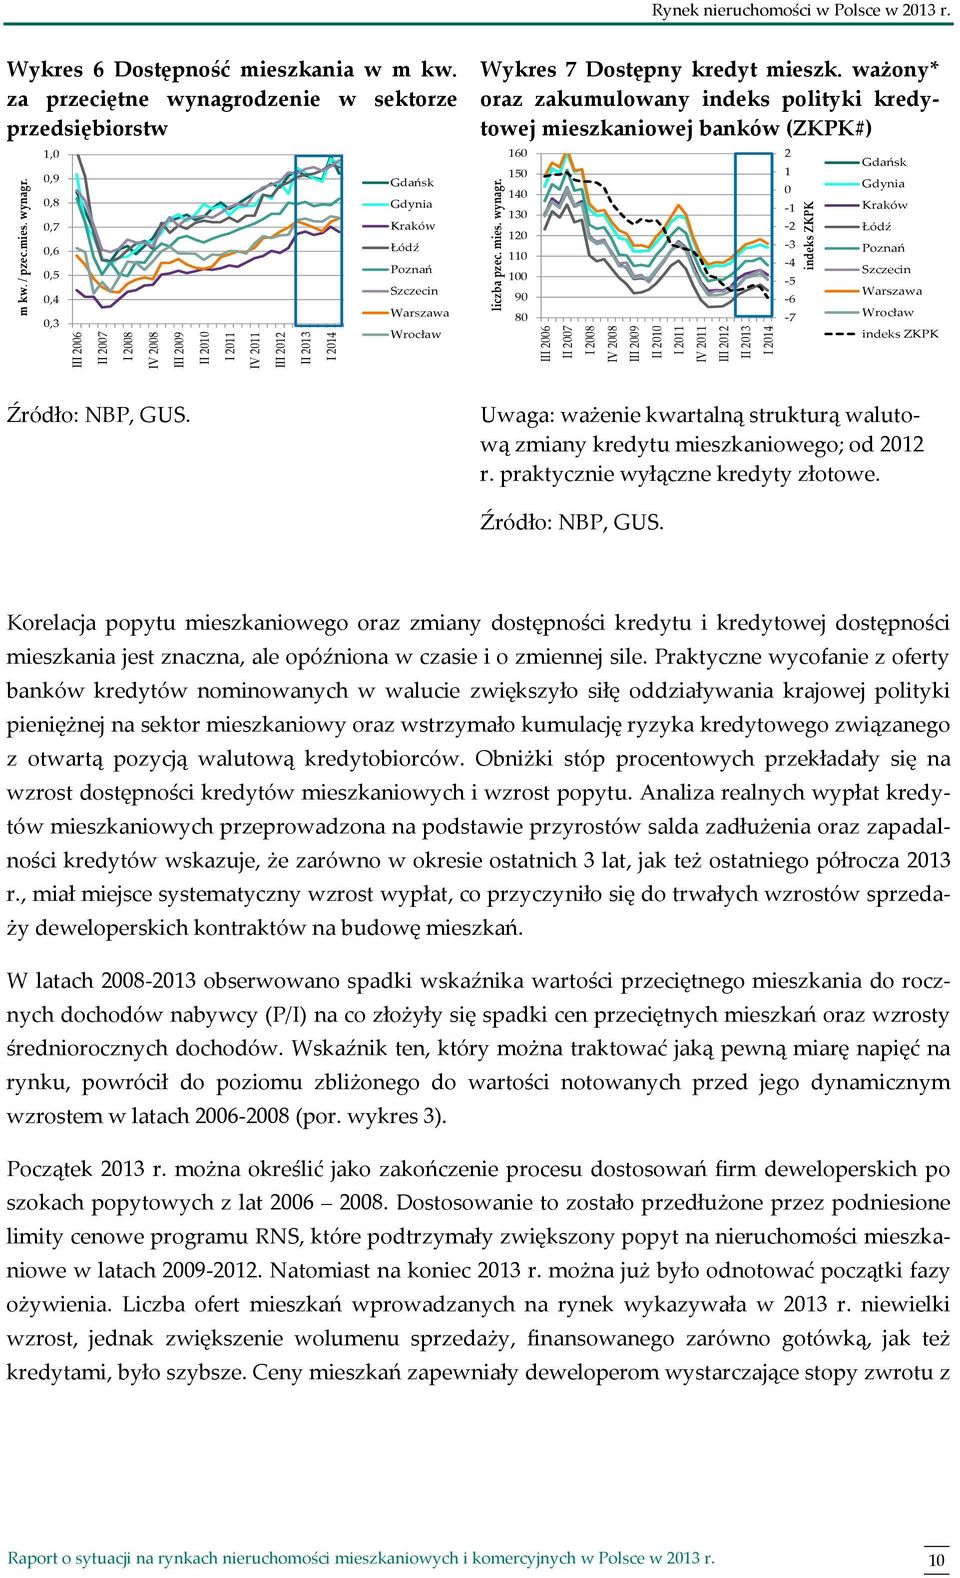 ważony* oraz zakumulowany indeks polityki kredytowej mieszkaniowej banków (ZKPK#) 16 15 14 13 12 11 1 9 8 2 1-1 -2-3 -4-5 -6-7 Gdańsk Gdynia Kraków Łódź Poznań Szczecin Warszawa indeks ZKPK Źródło: